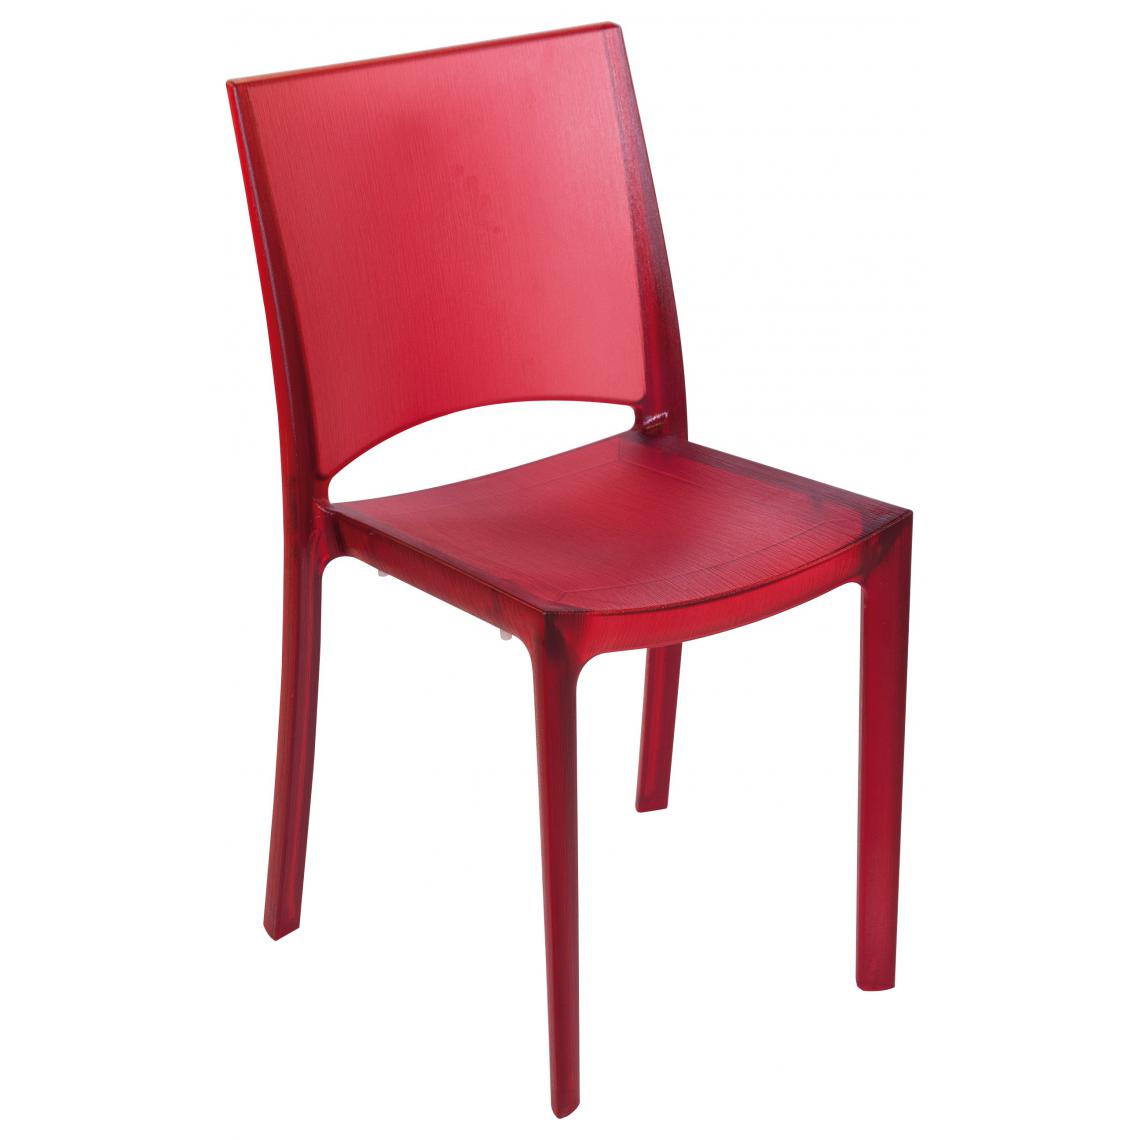 3S. x Home - Chaise Design Rouge Opaque Fumée Transparente NILO - Chaises